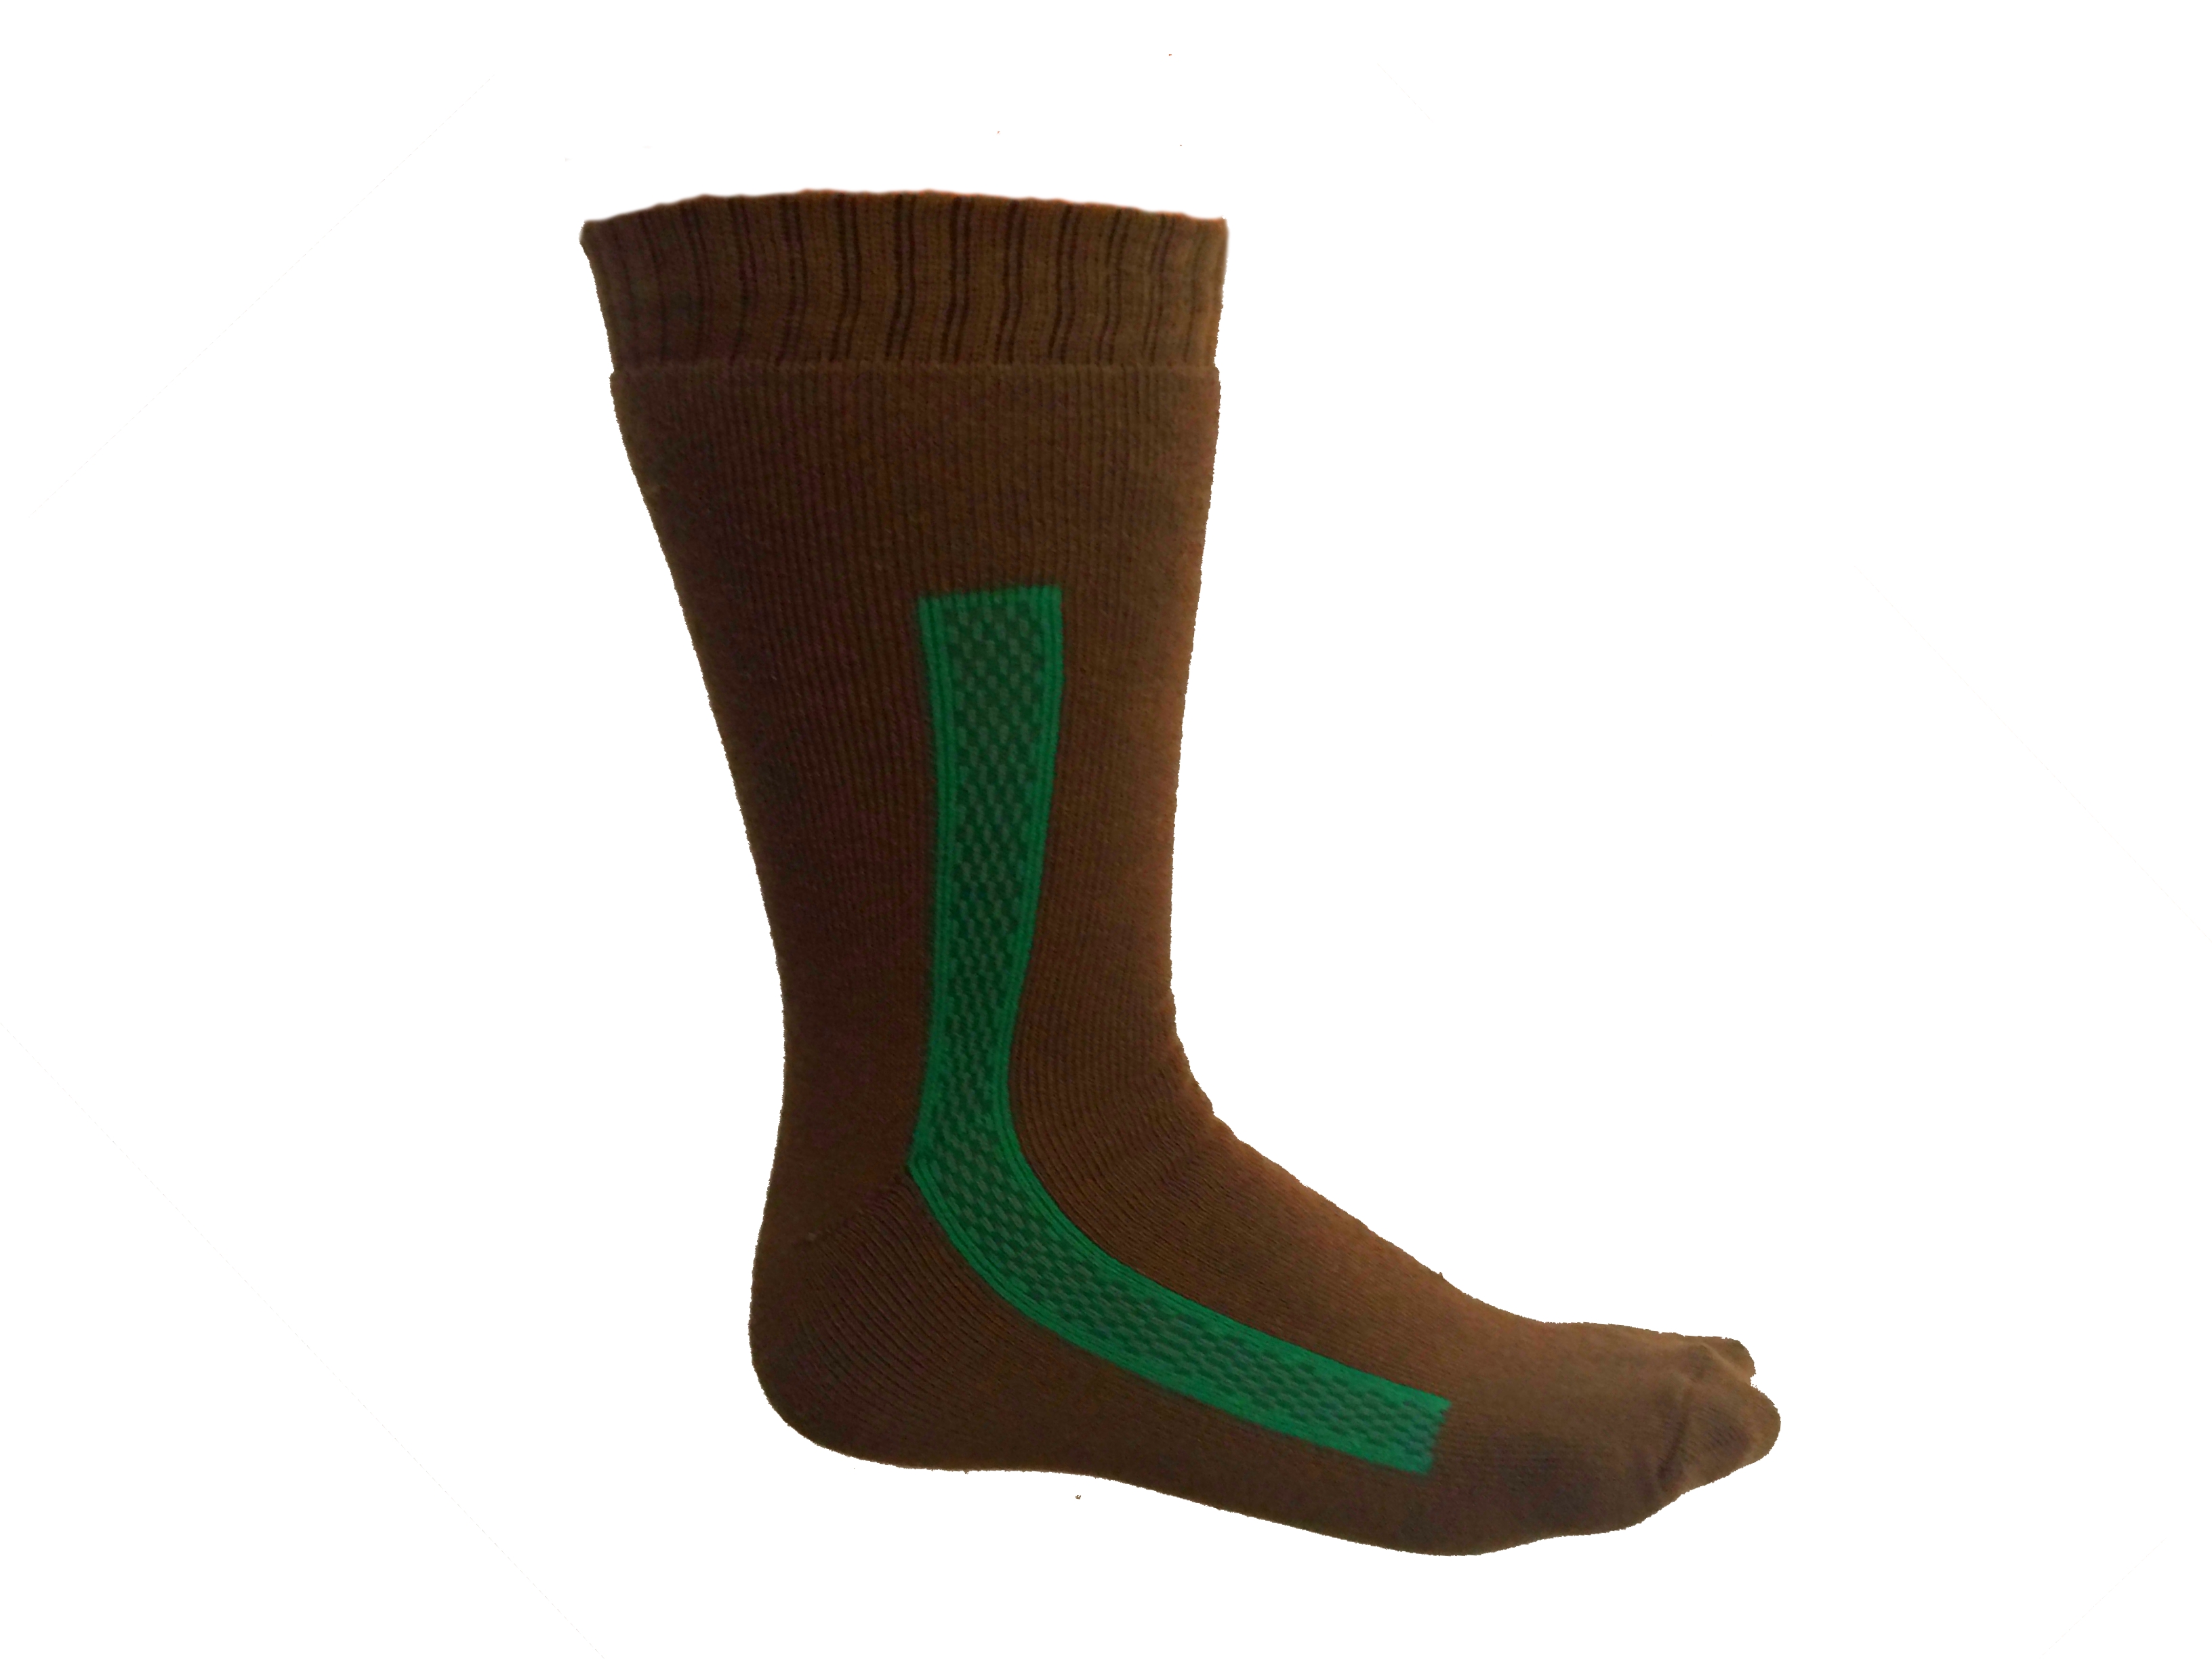 Poľovnícke ponožky Termo- lesnícka zelená so zeleným pásikom